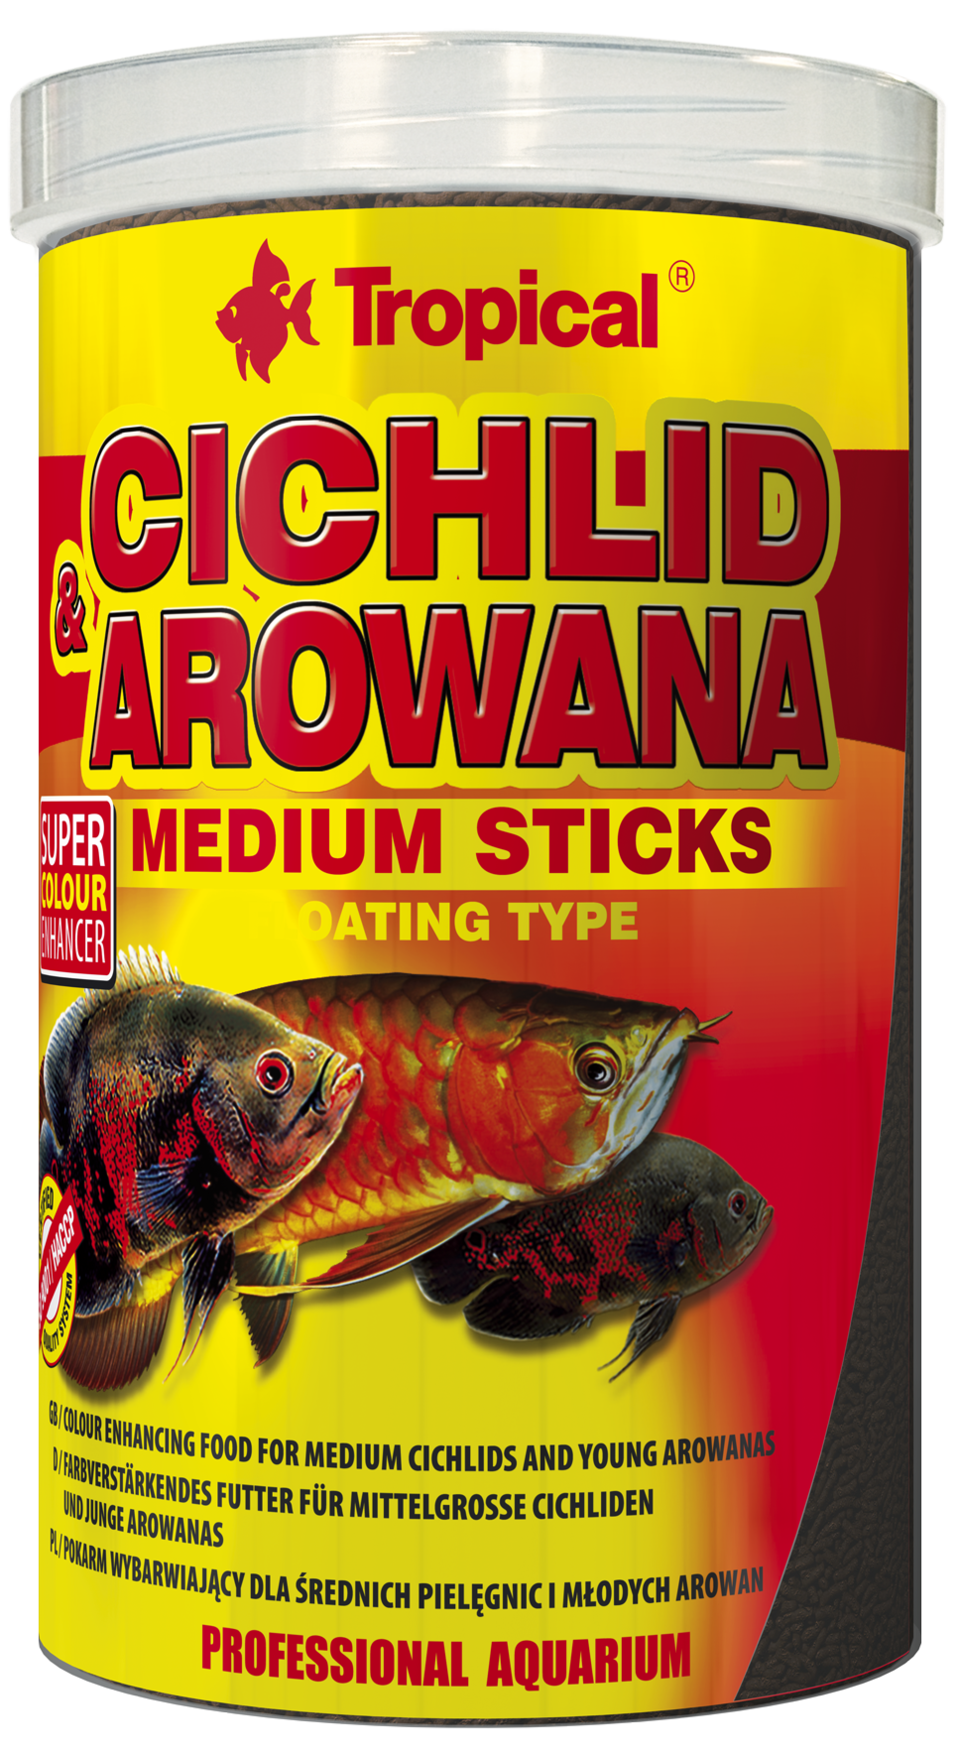 TROPICAL Cichlid & Arowana Medium Sticks 250ml bâtonnets rehaussant la couleur pour cichlidés de taille moyenne et jeunes arowanas